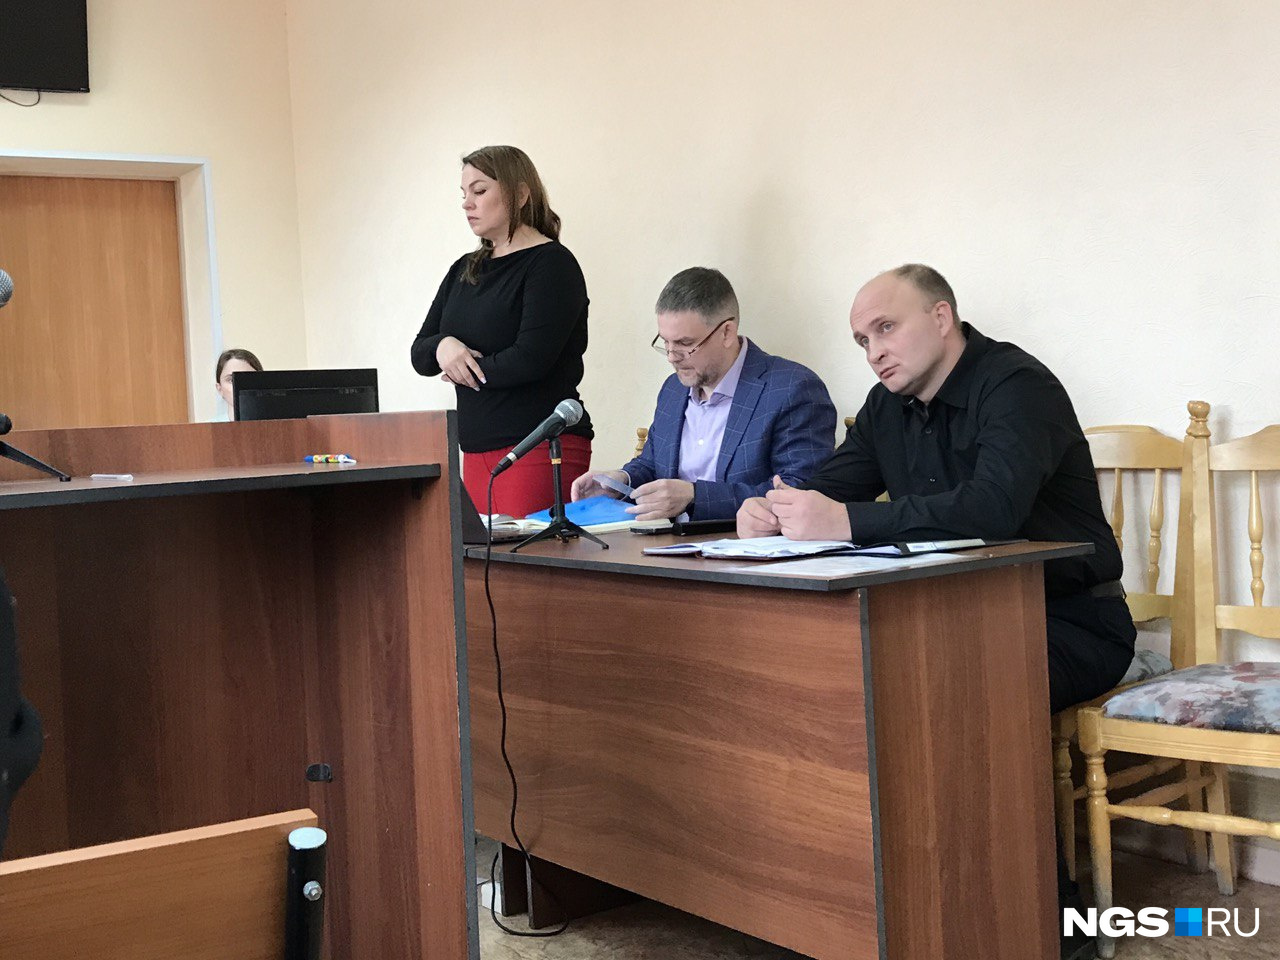 Наталья Юзжалина первый раз выступает в суде в качестве обвиняемой